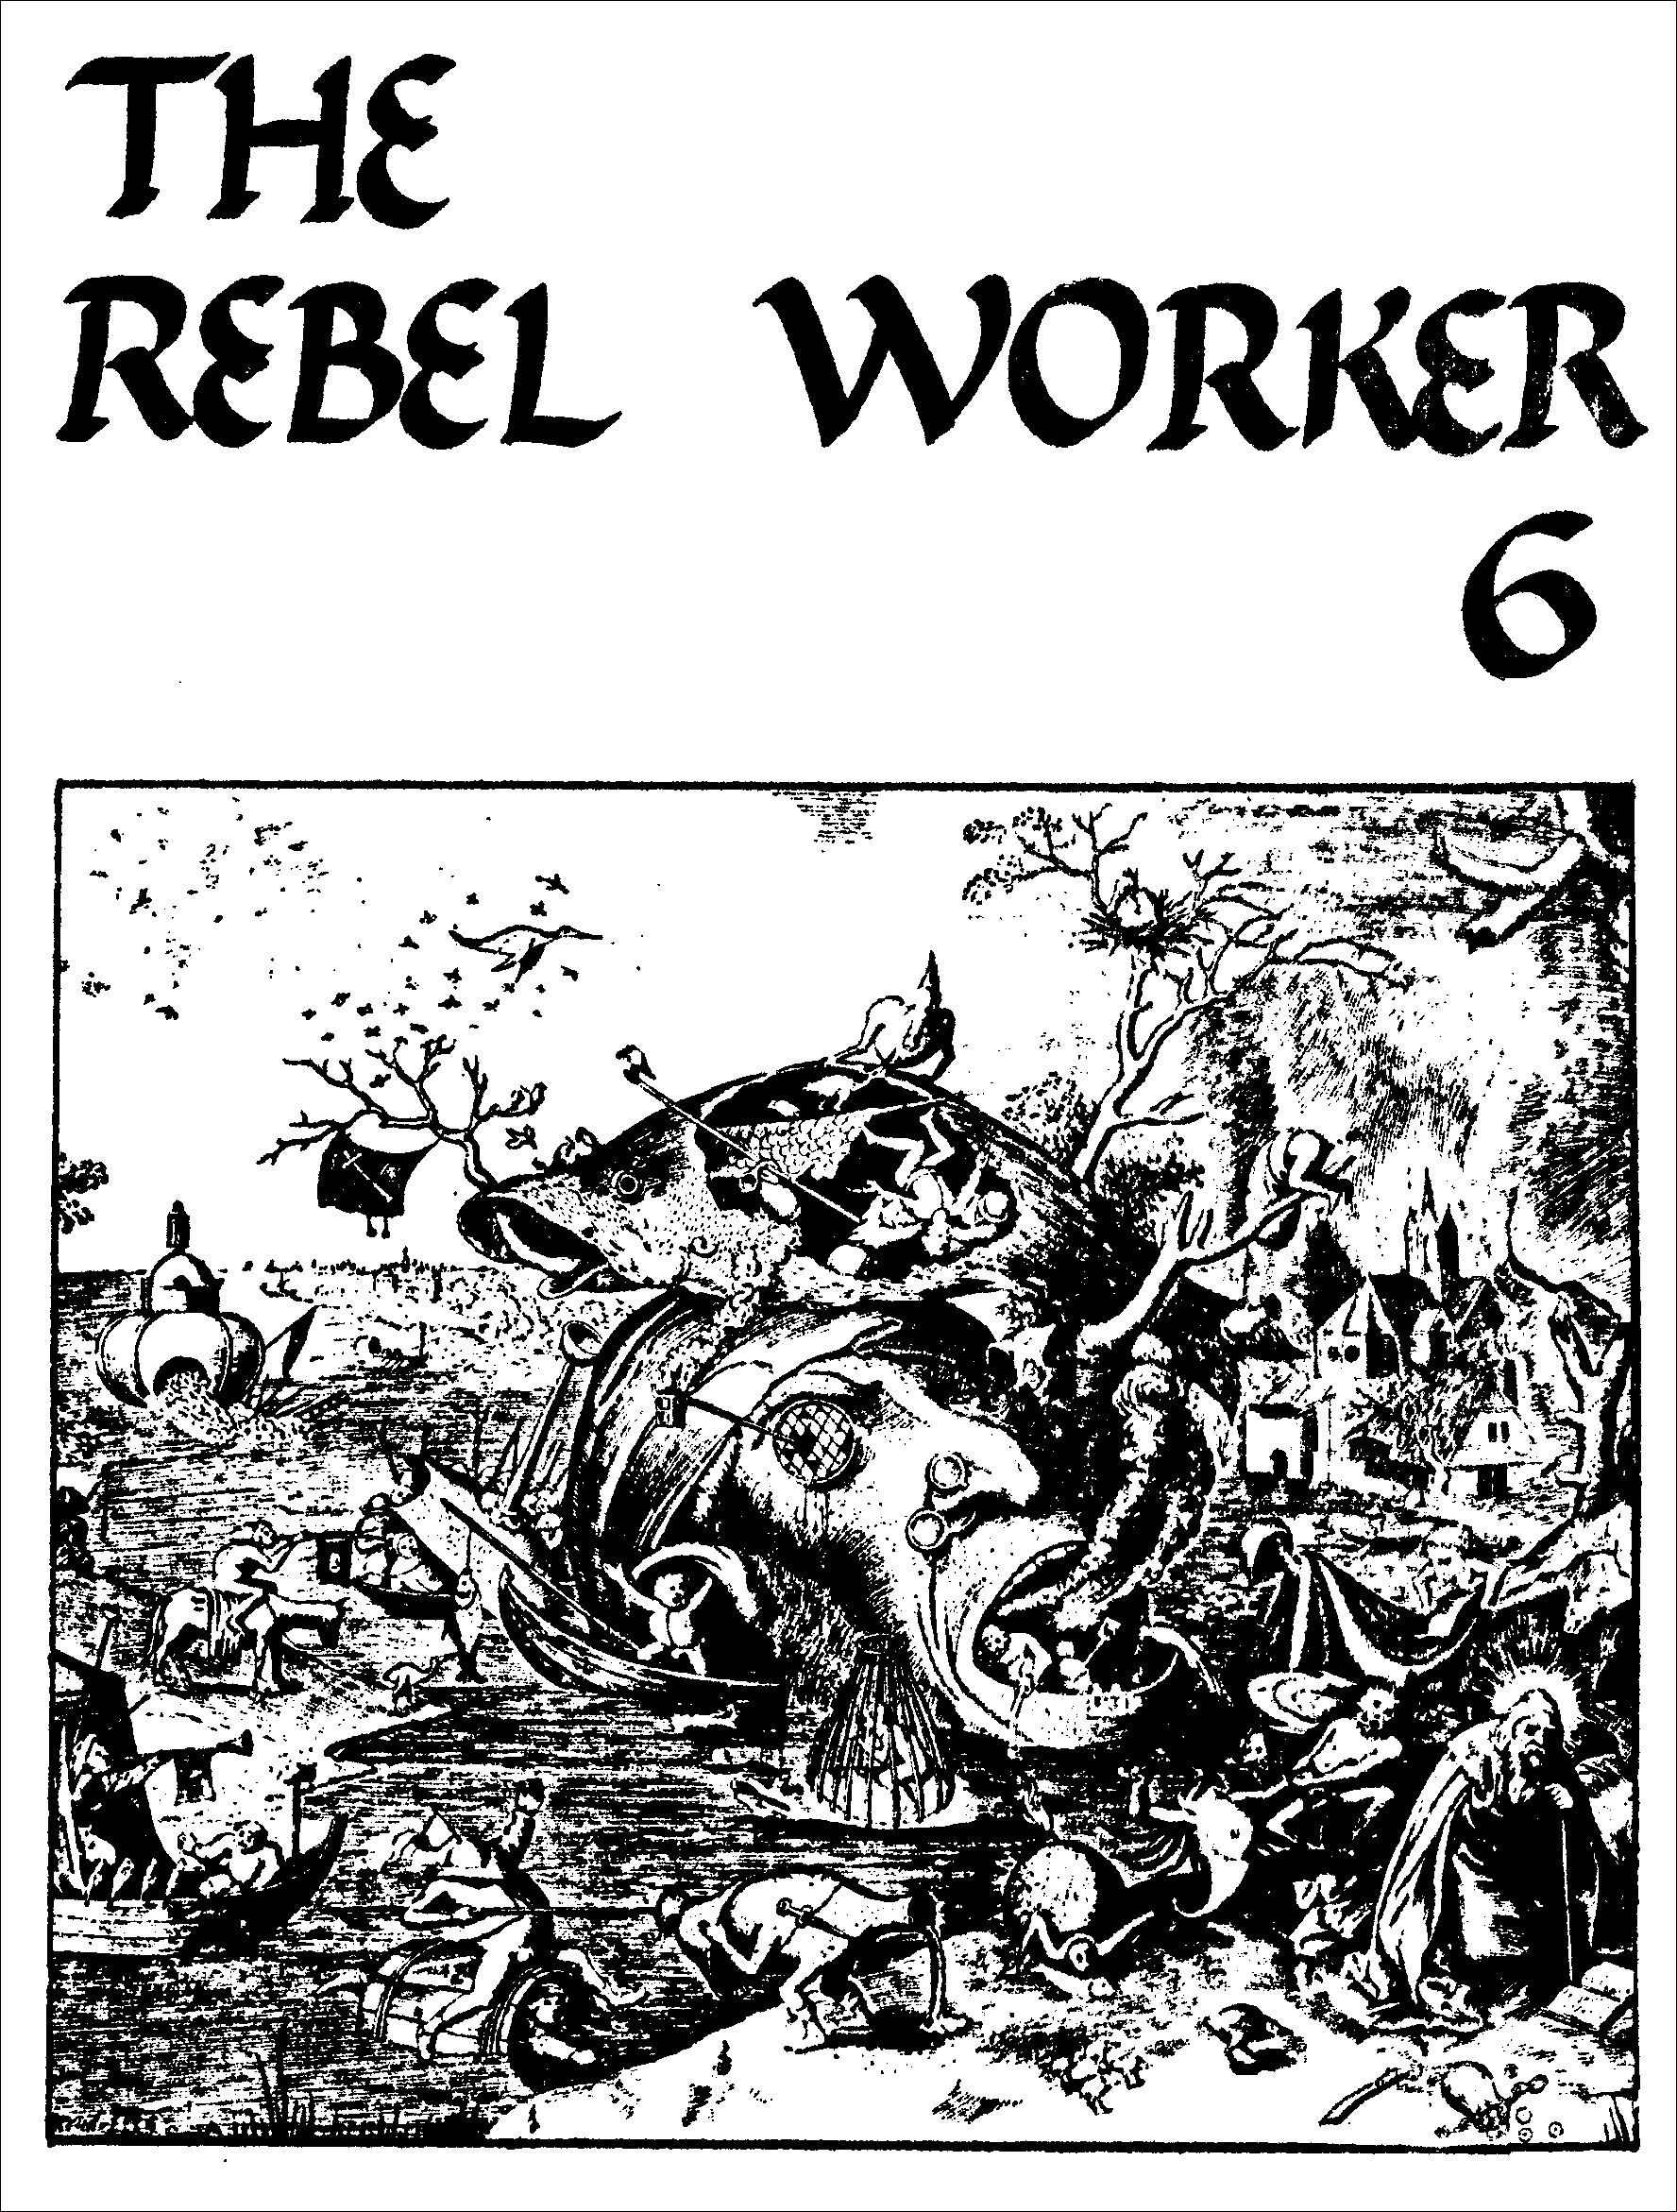 r-w-rebel-worker-group-rebel-worker-6-1.png